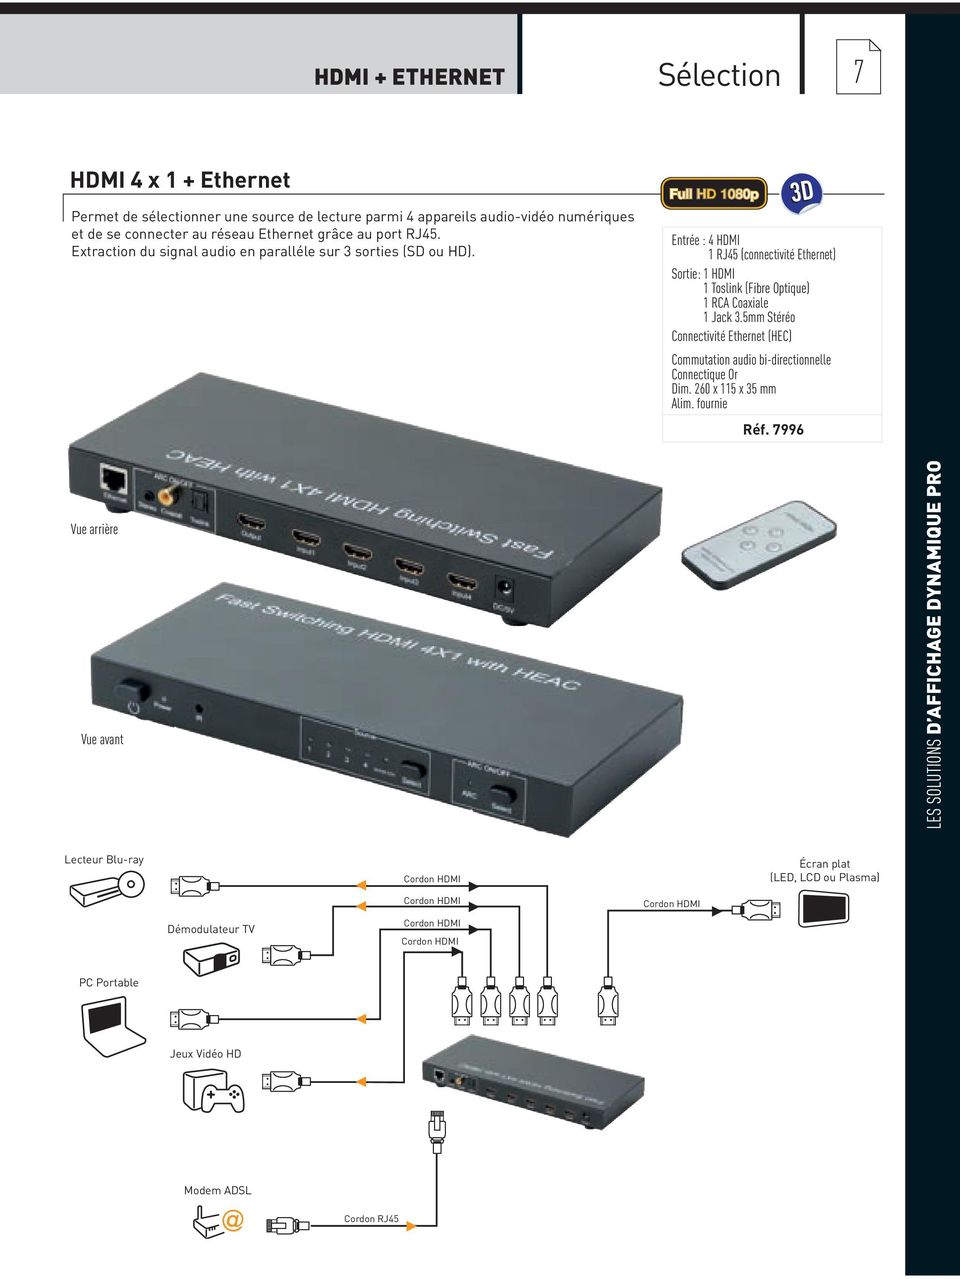 5mm Stéréo Connectivité Ethernet (HEC) Commutation audio bi-directionnelle Connectique Or Dim. 260 x 115 x 35 mm Réf.